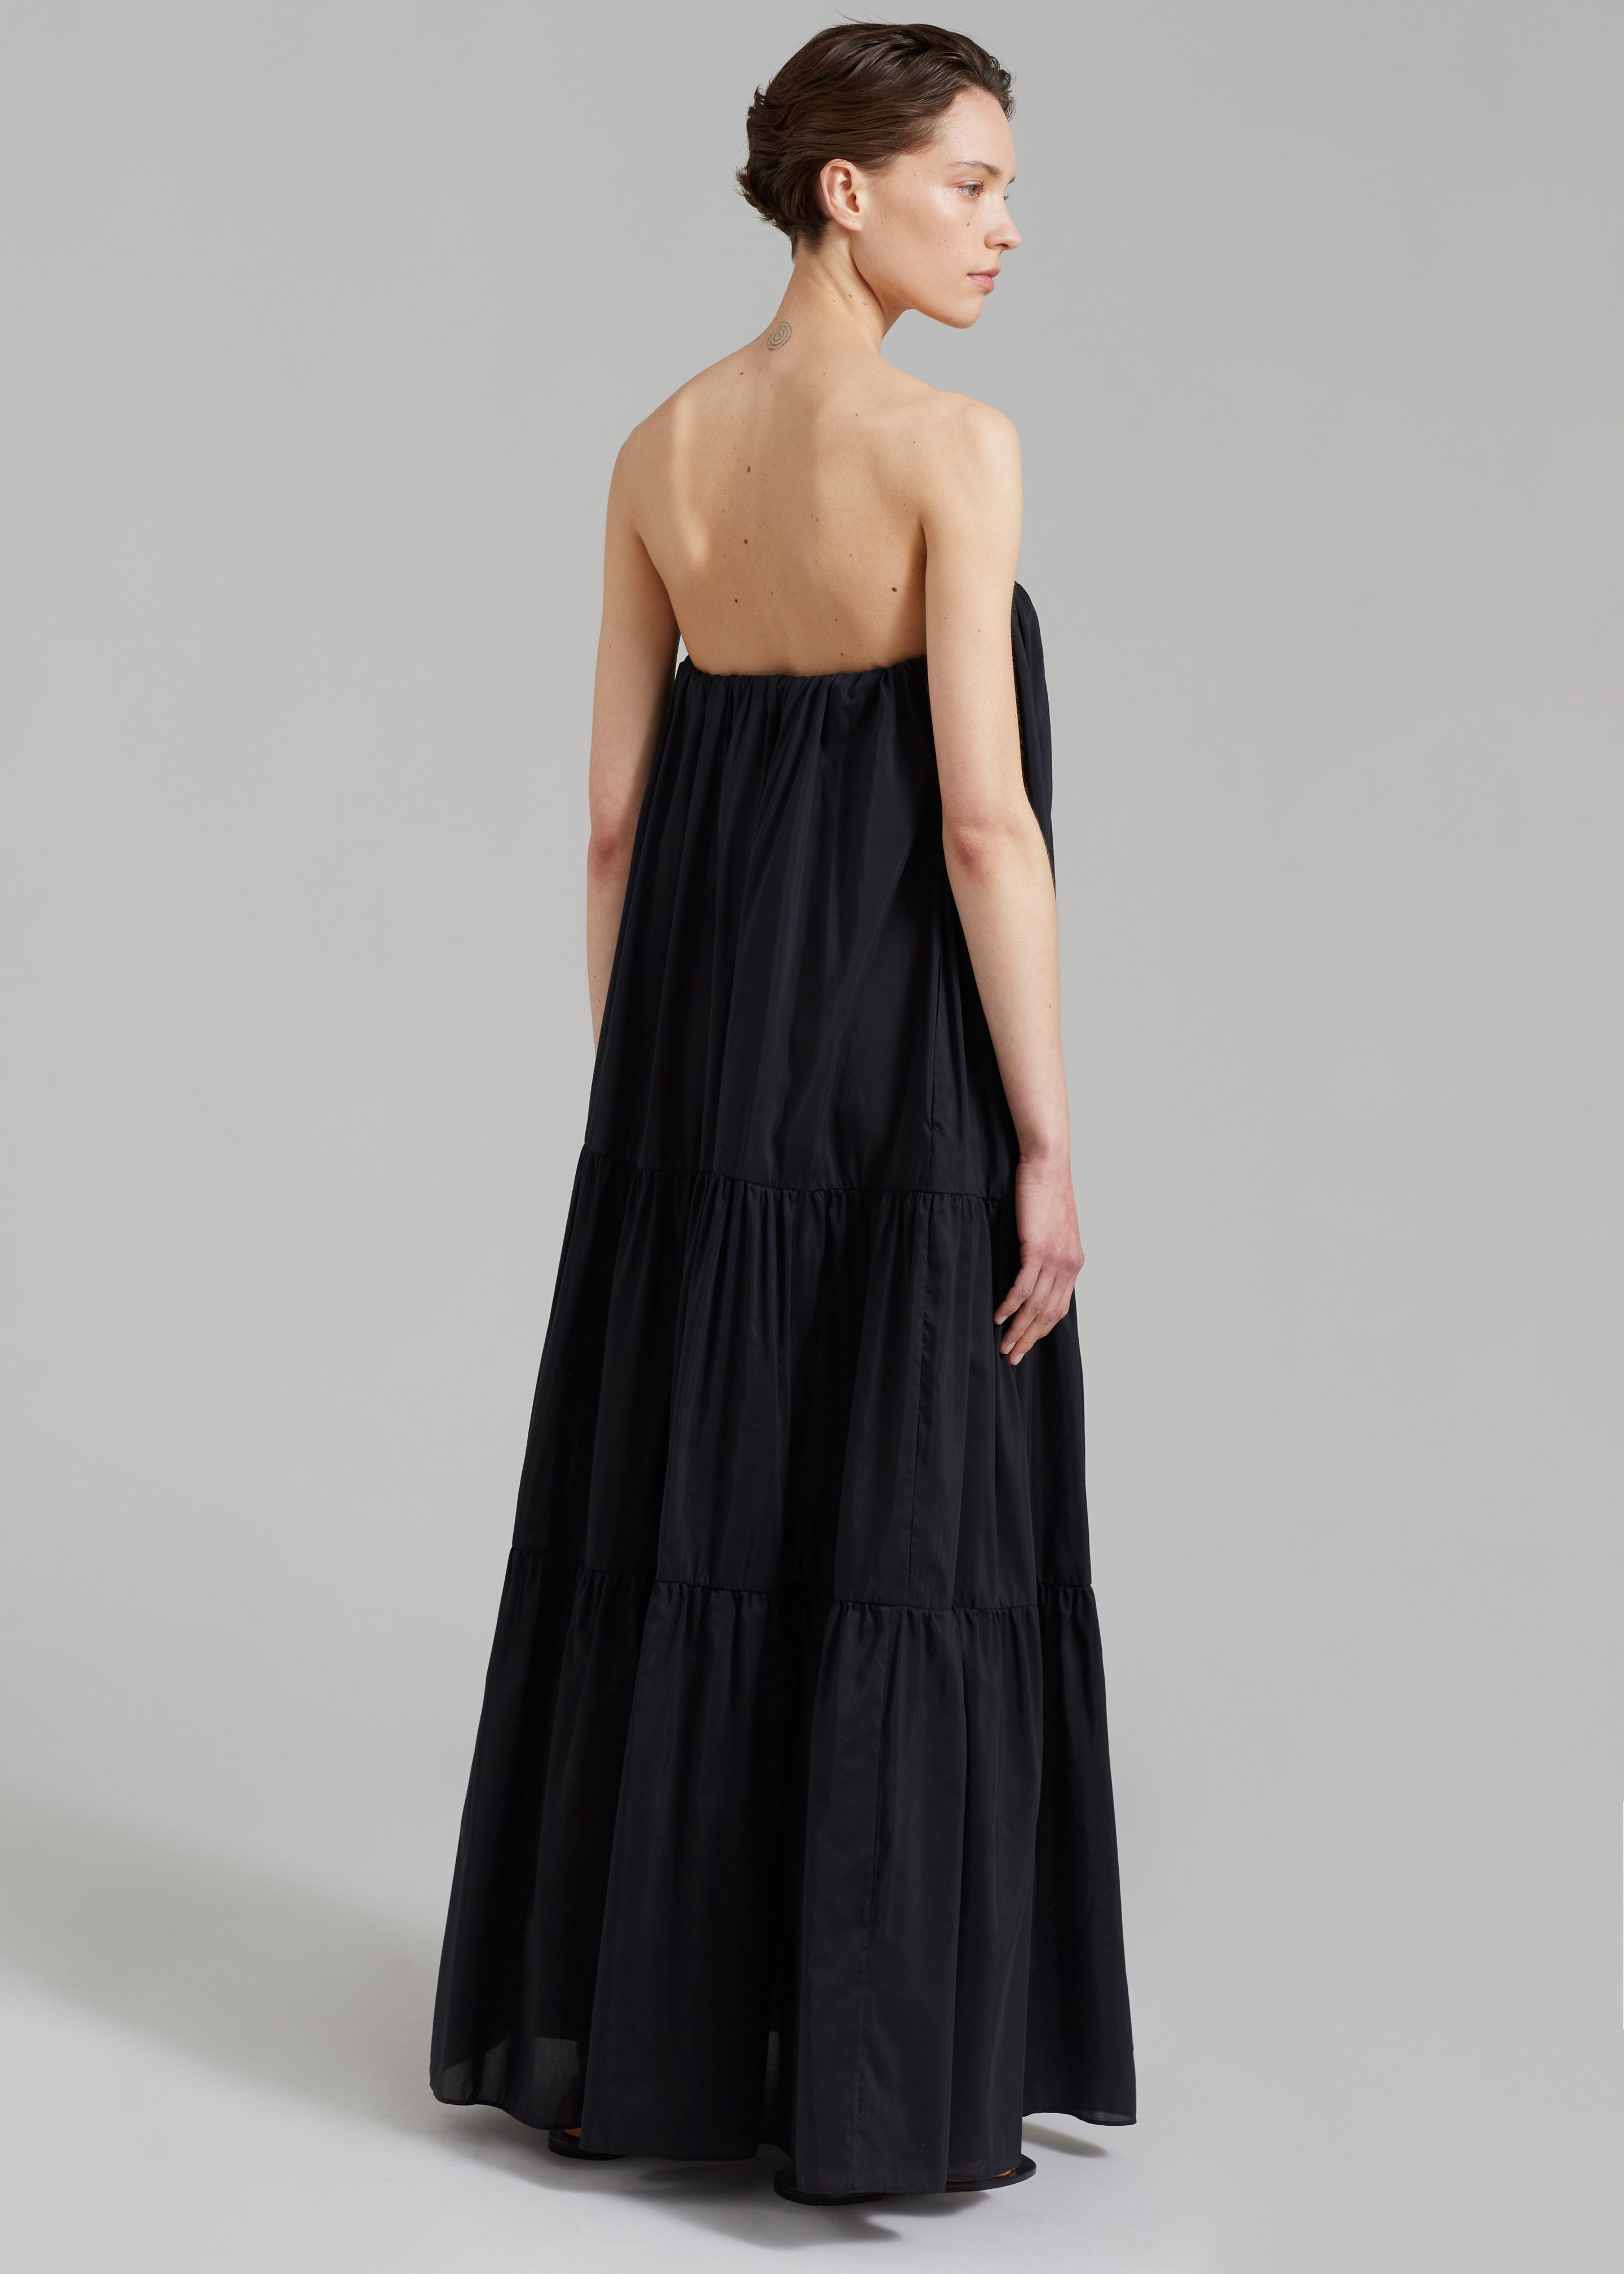 Matteau Voluminous Strapless Tiered Dress - Black - 6